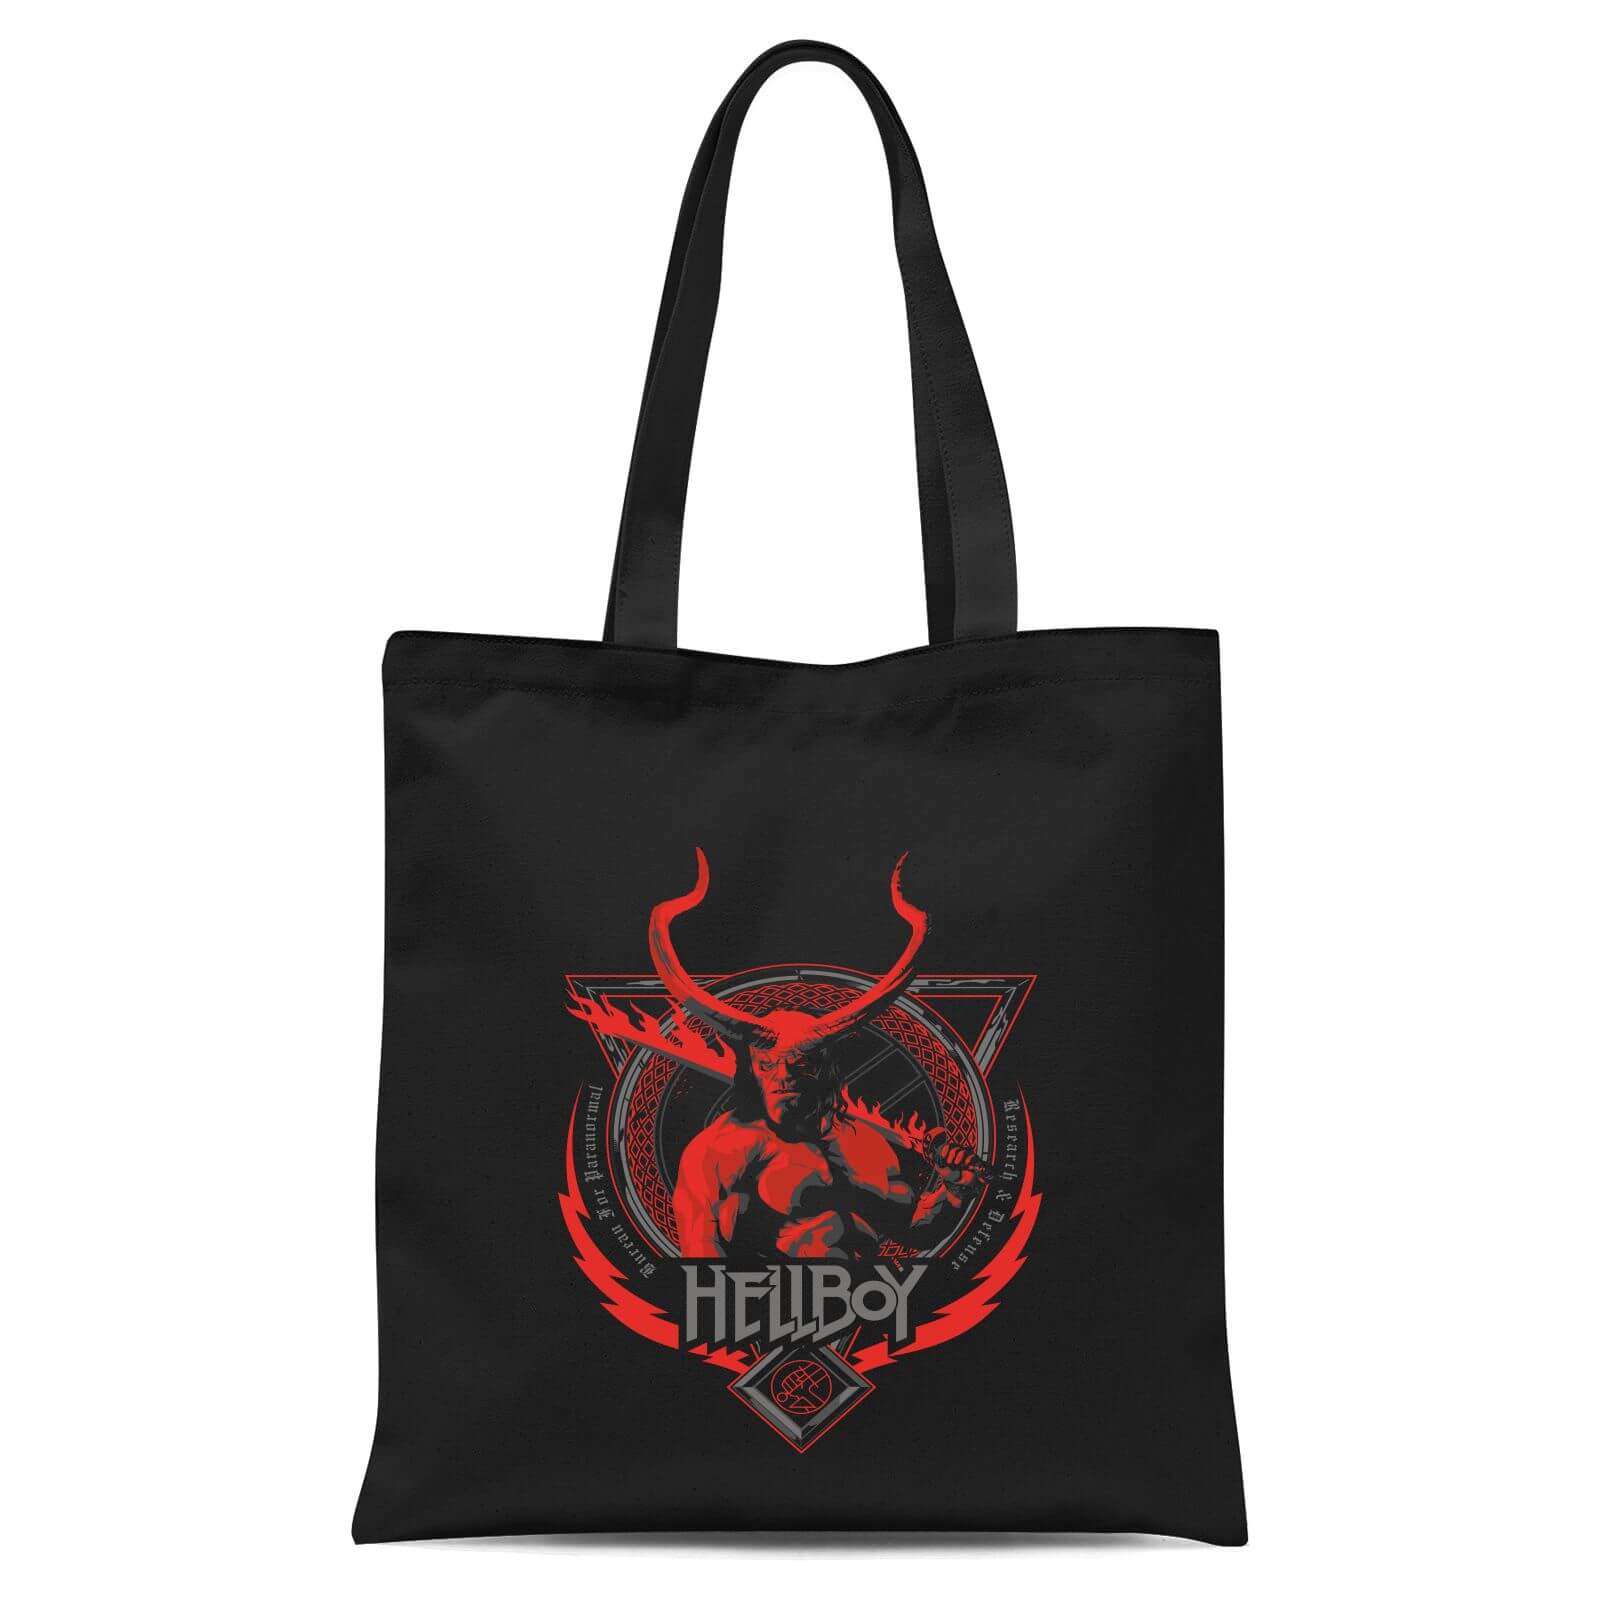 Hellboy Hell's Hero Tote Bag - Black